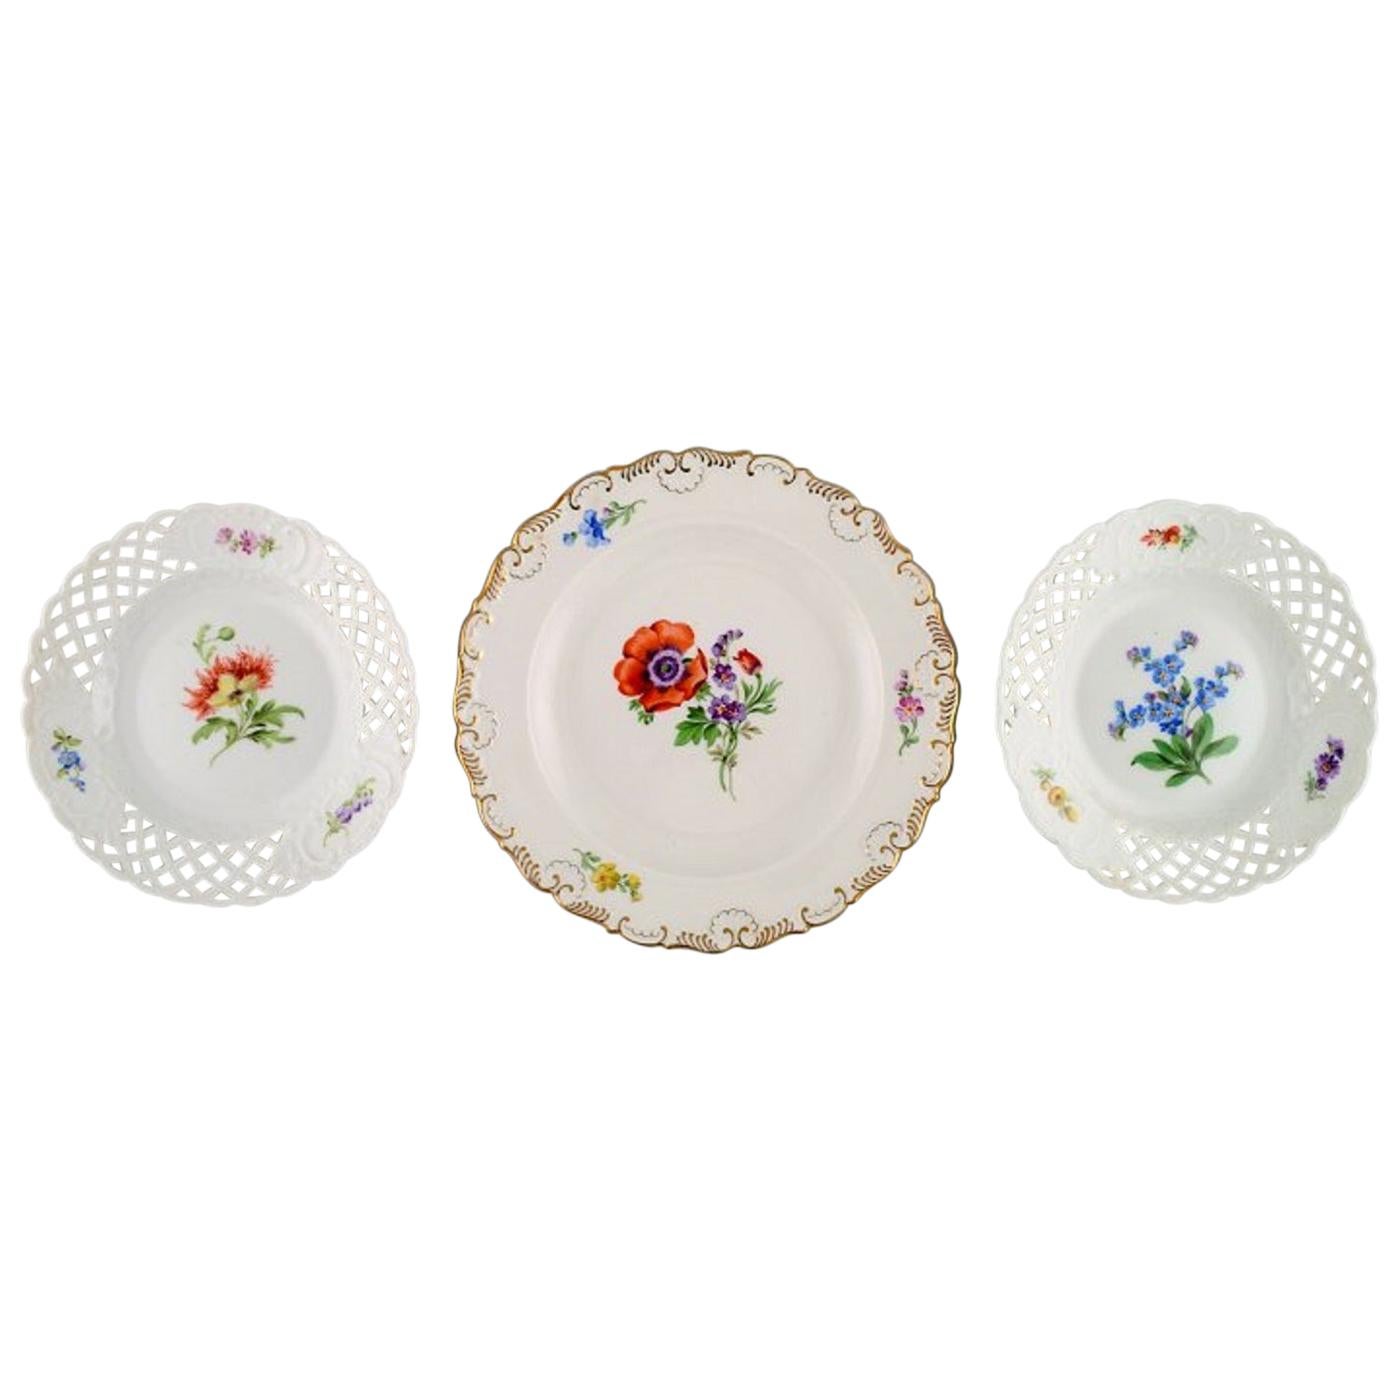 Drei antike Meissener Teller aus handbemalter Porzellan mit Blumenmotiven